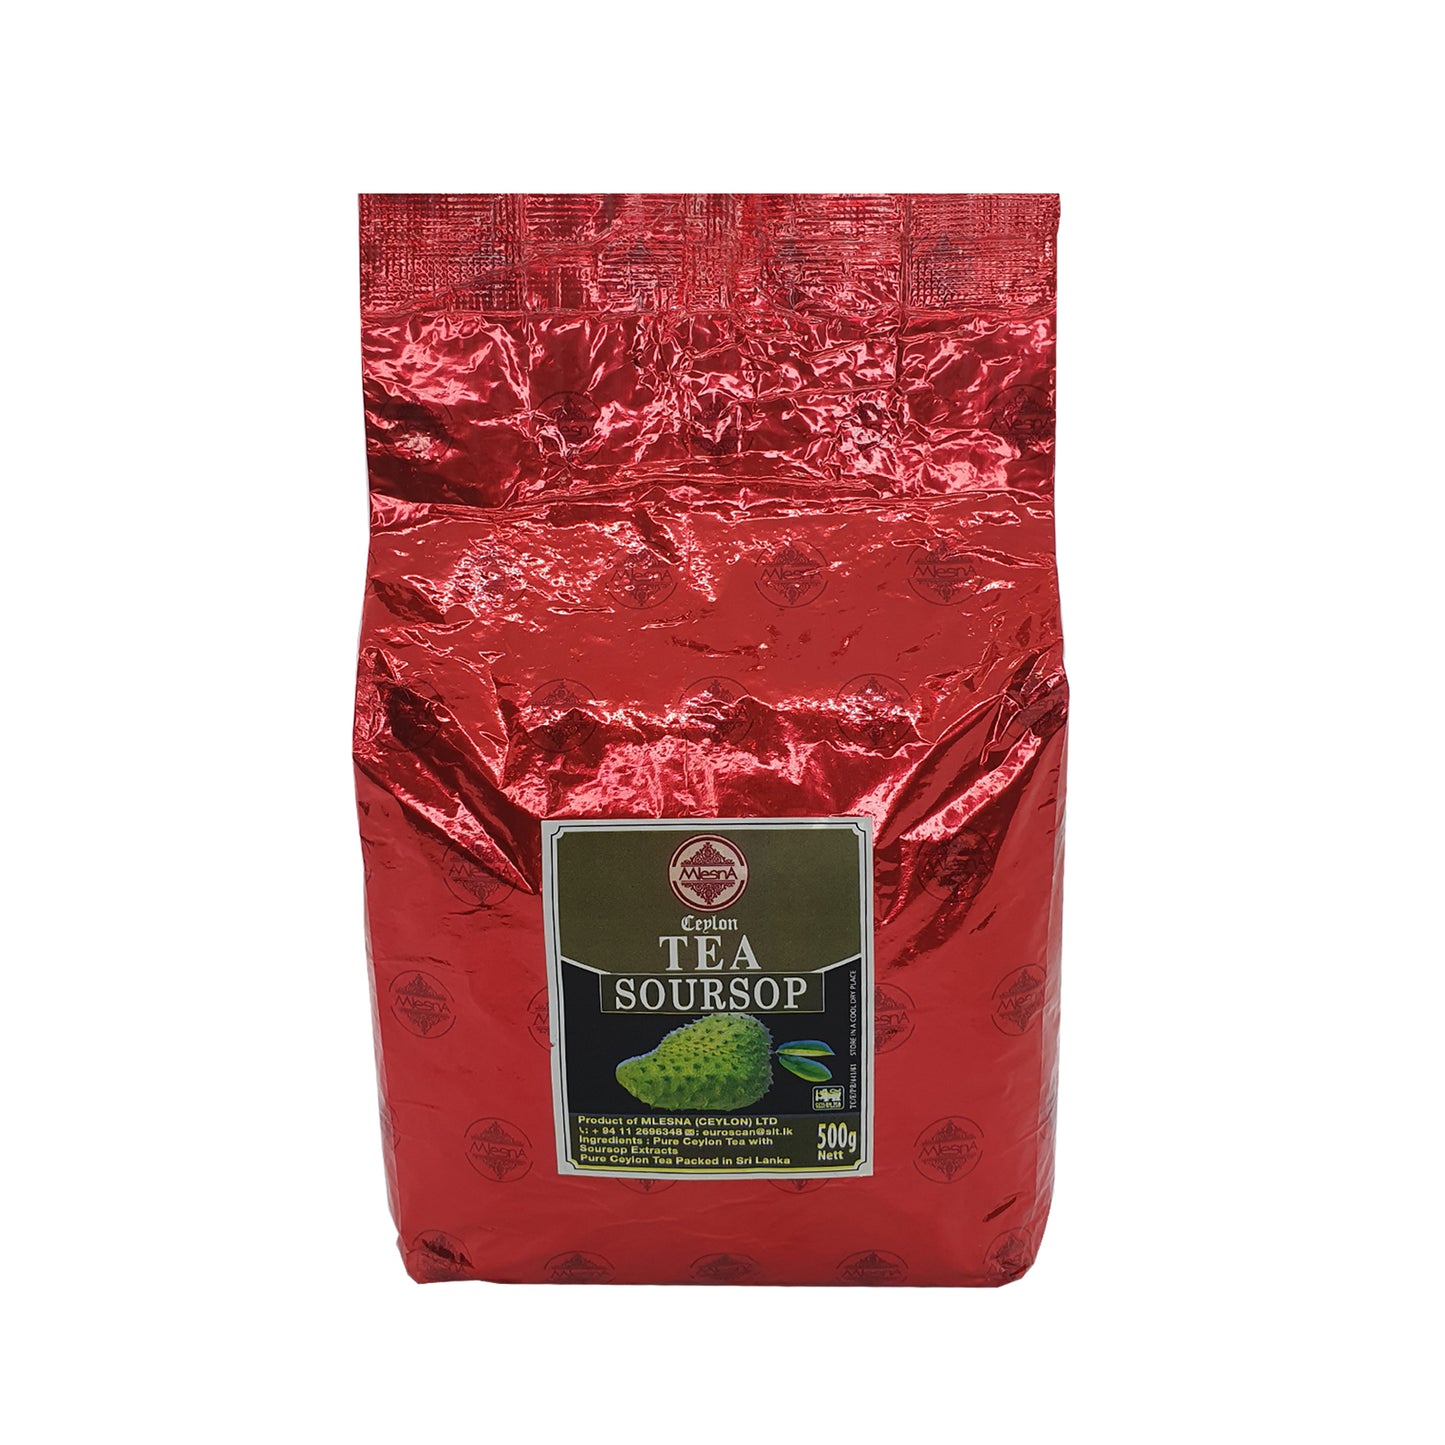 ムレスナセイロンティーサワーソップ紅茶 (500g)